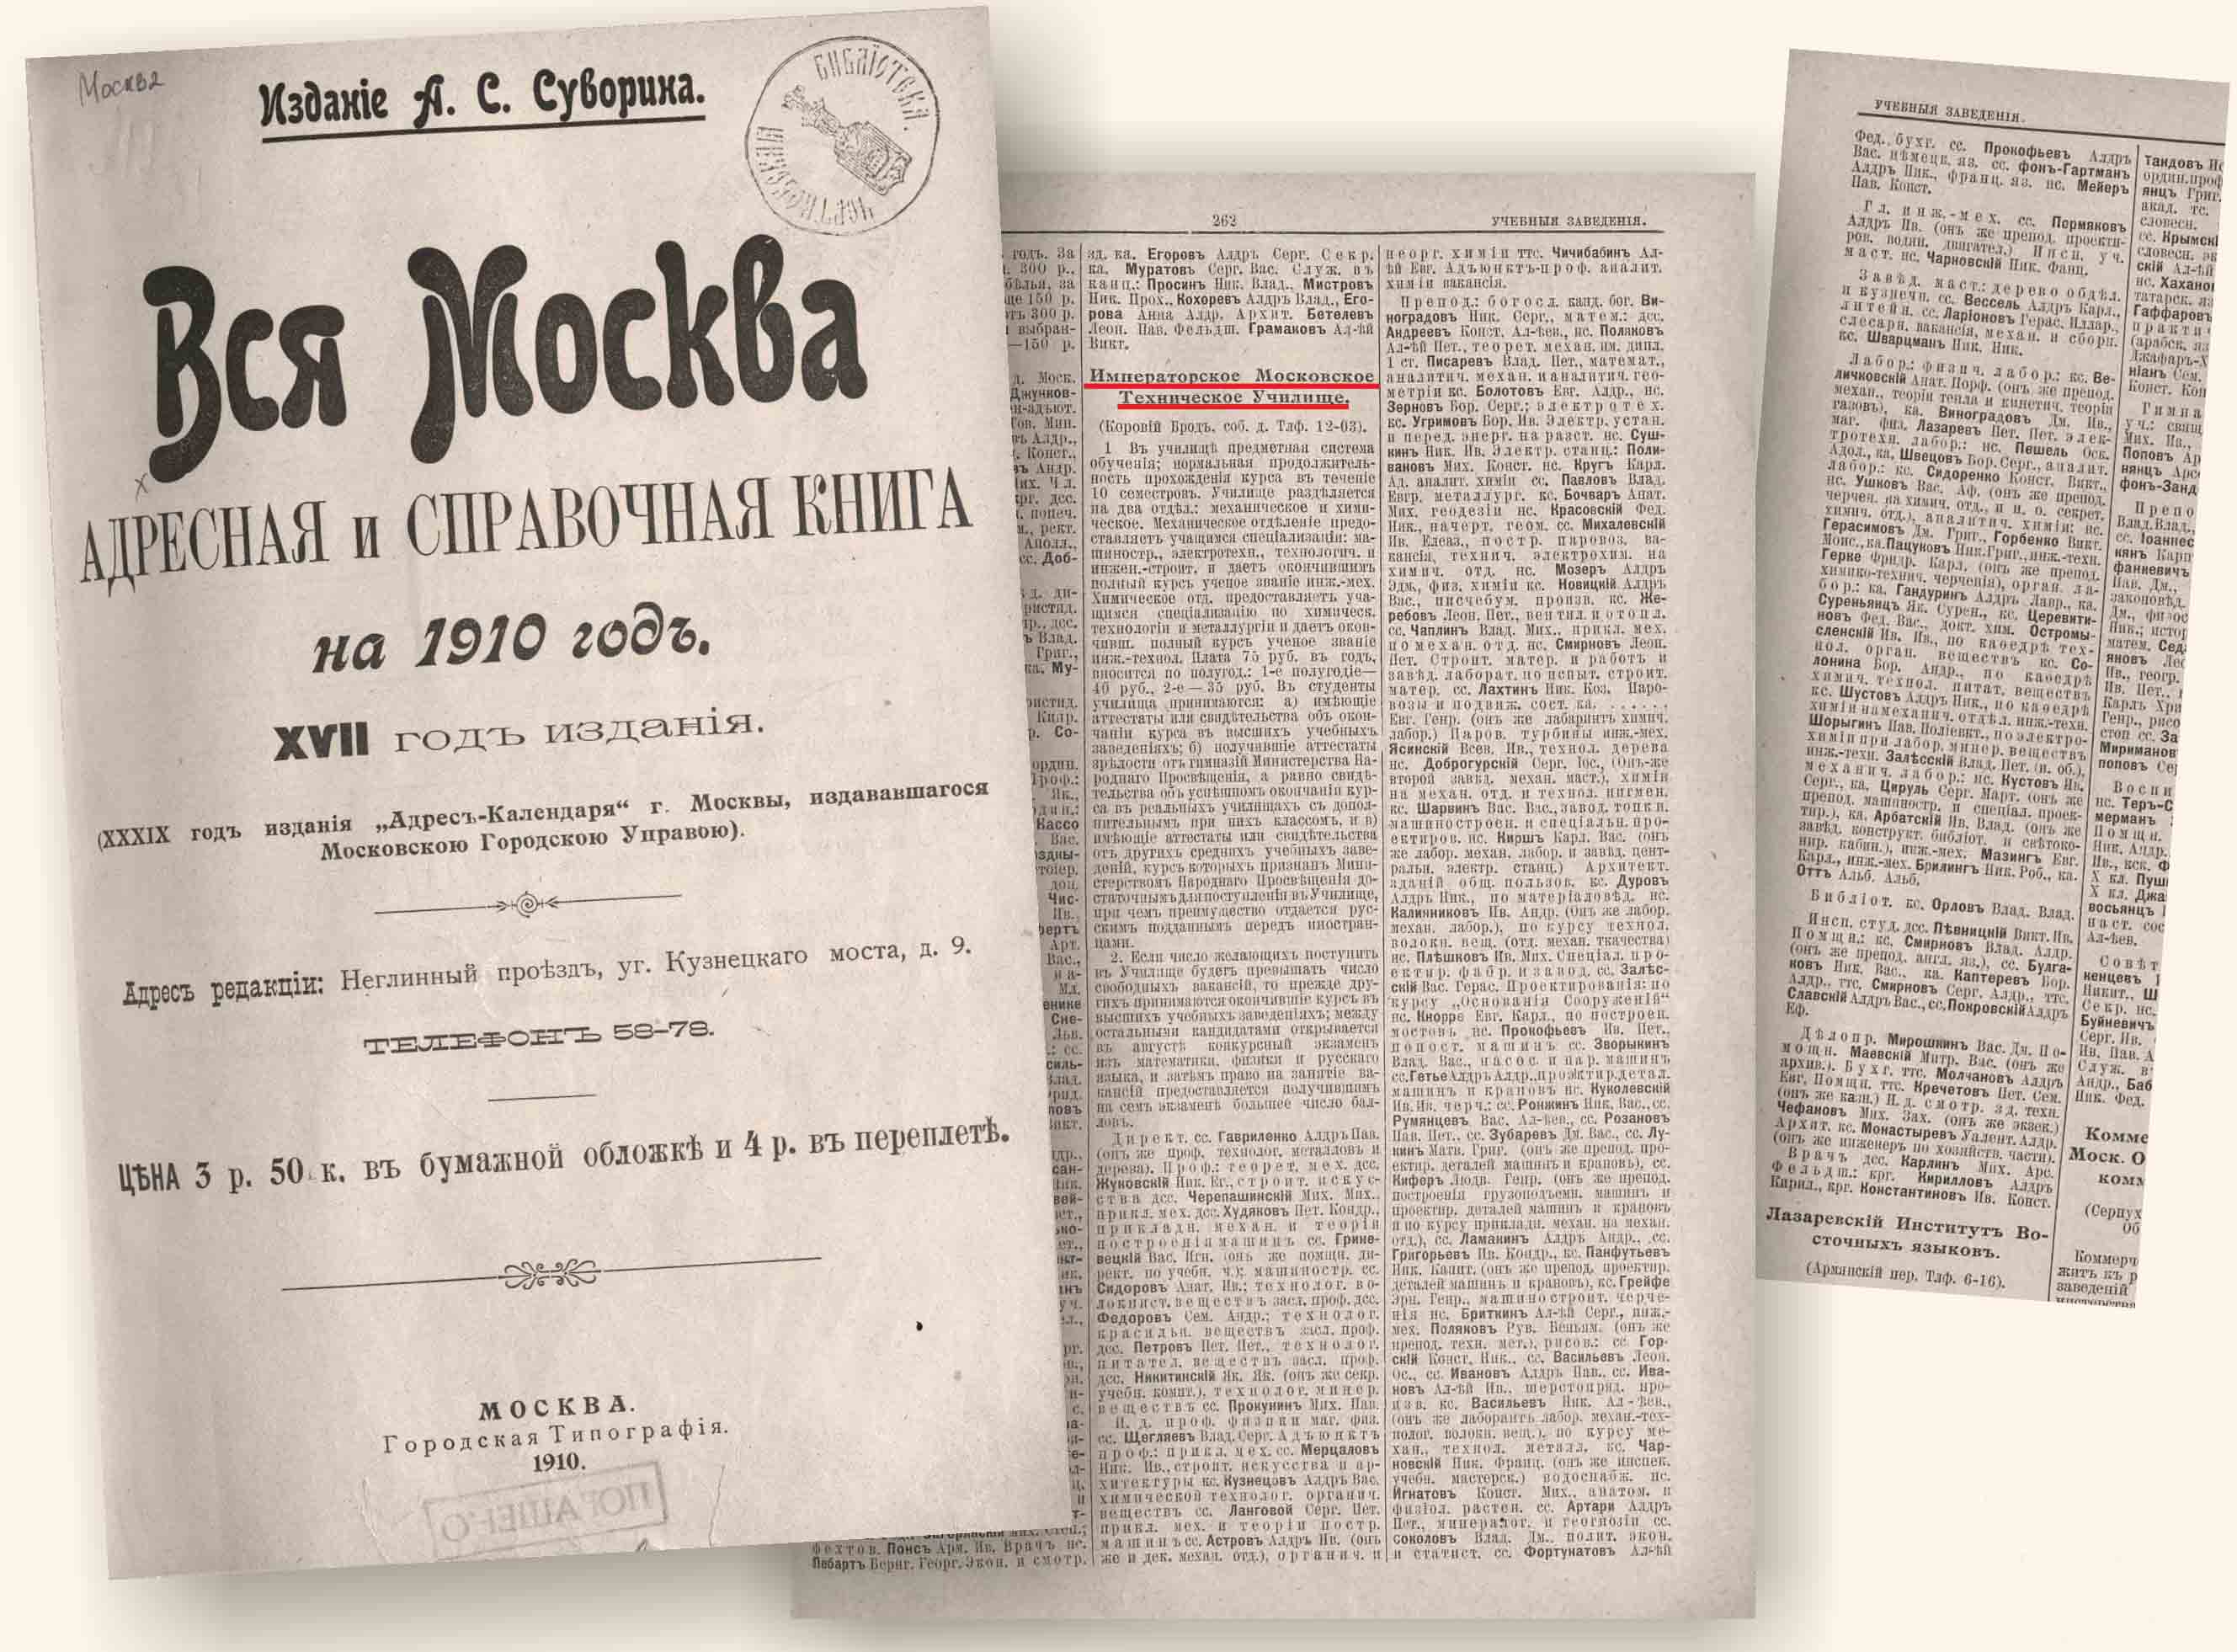 Вся Москва. ИМТУ в 1910 г.